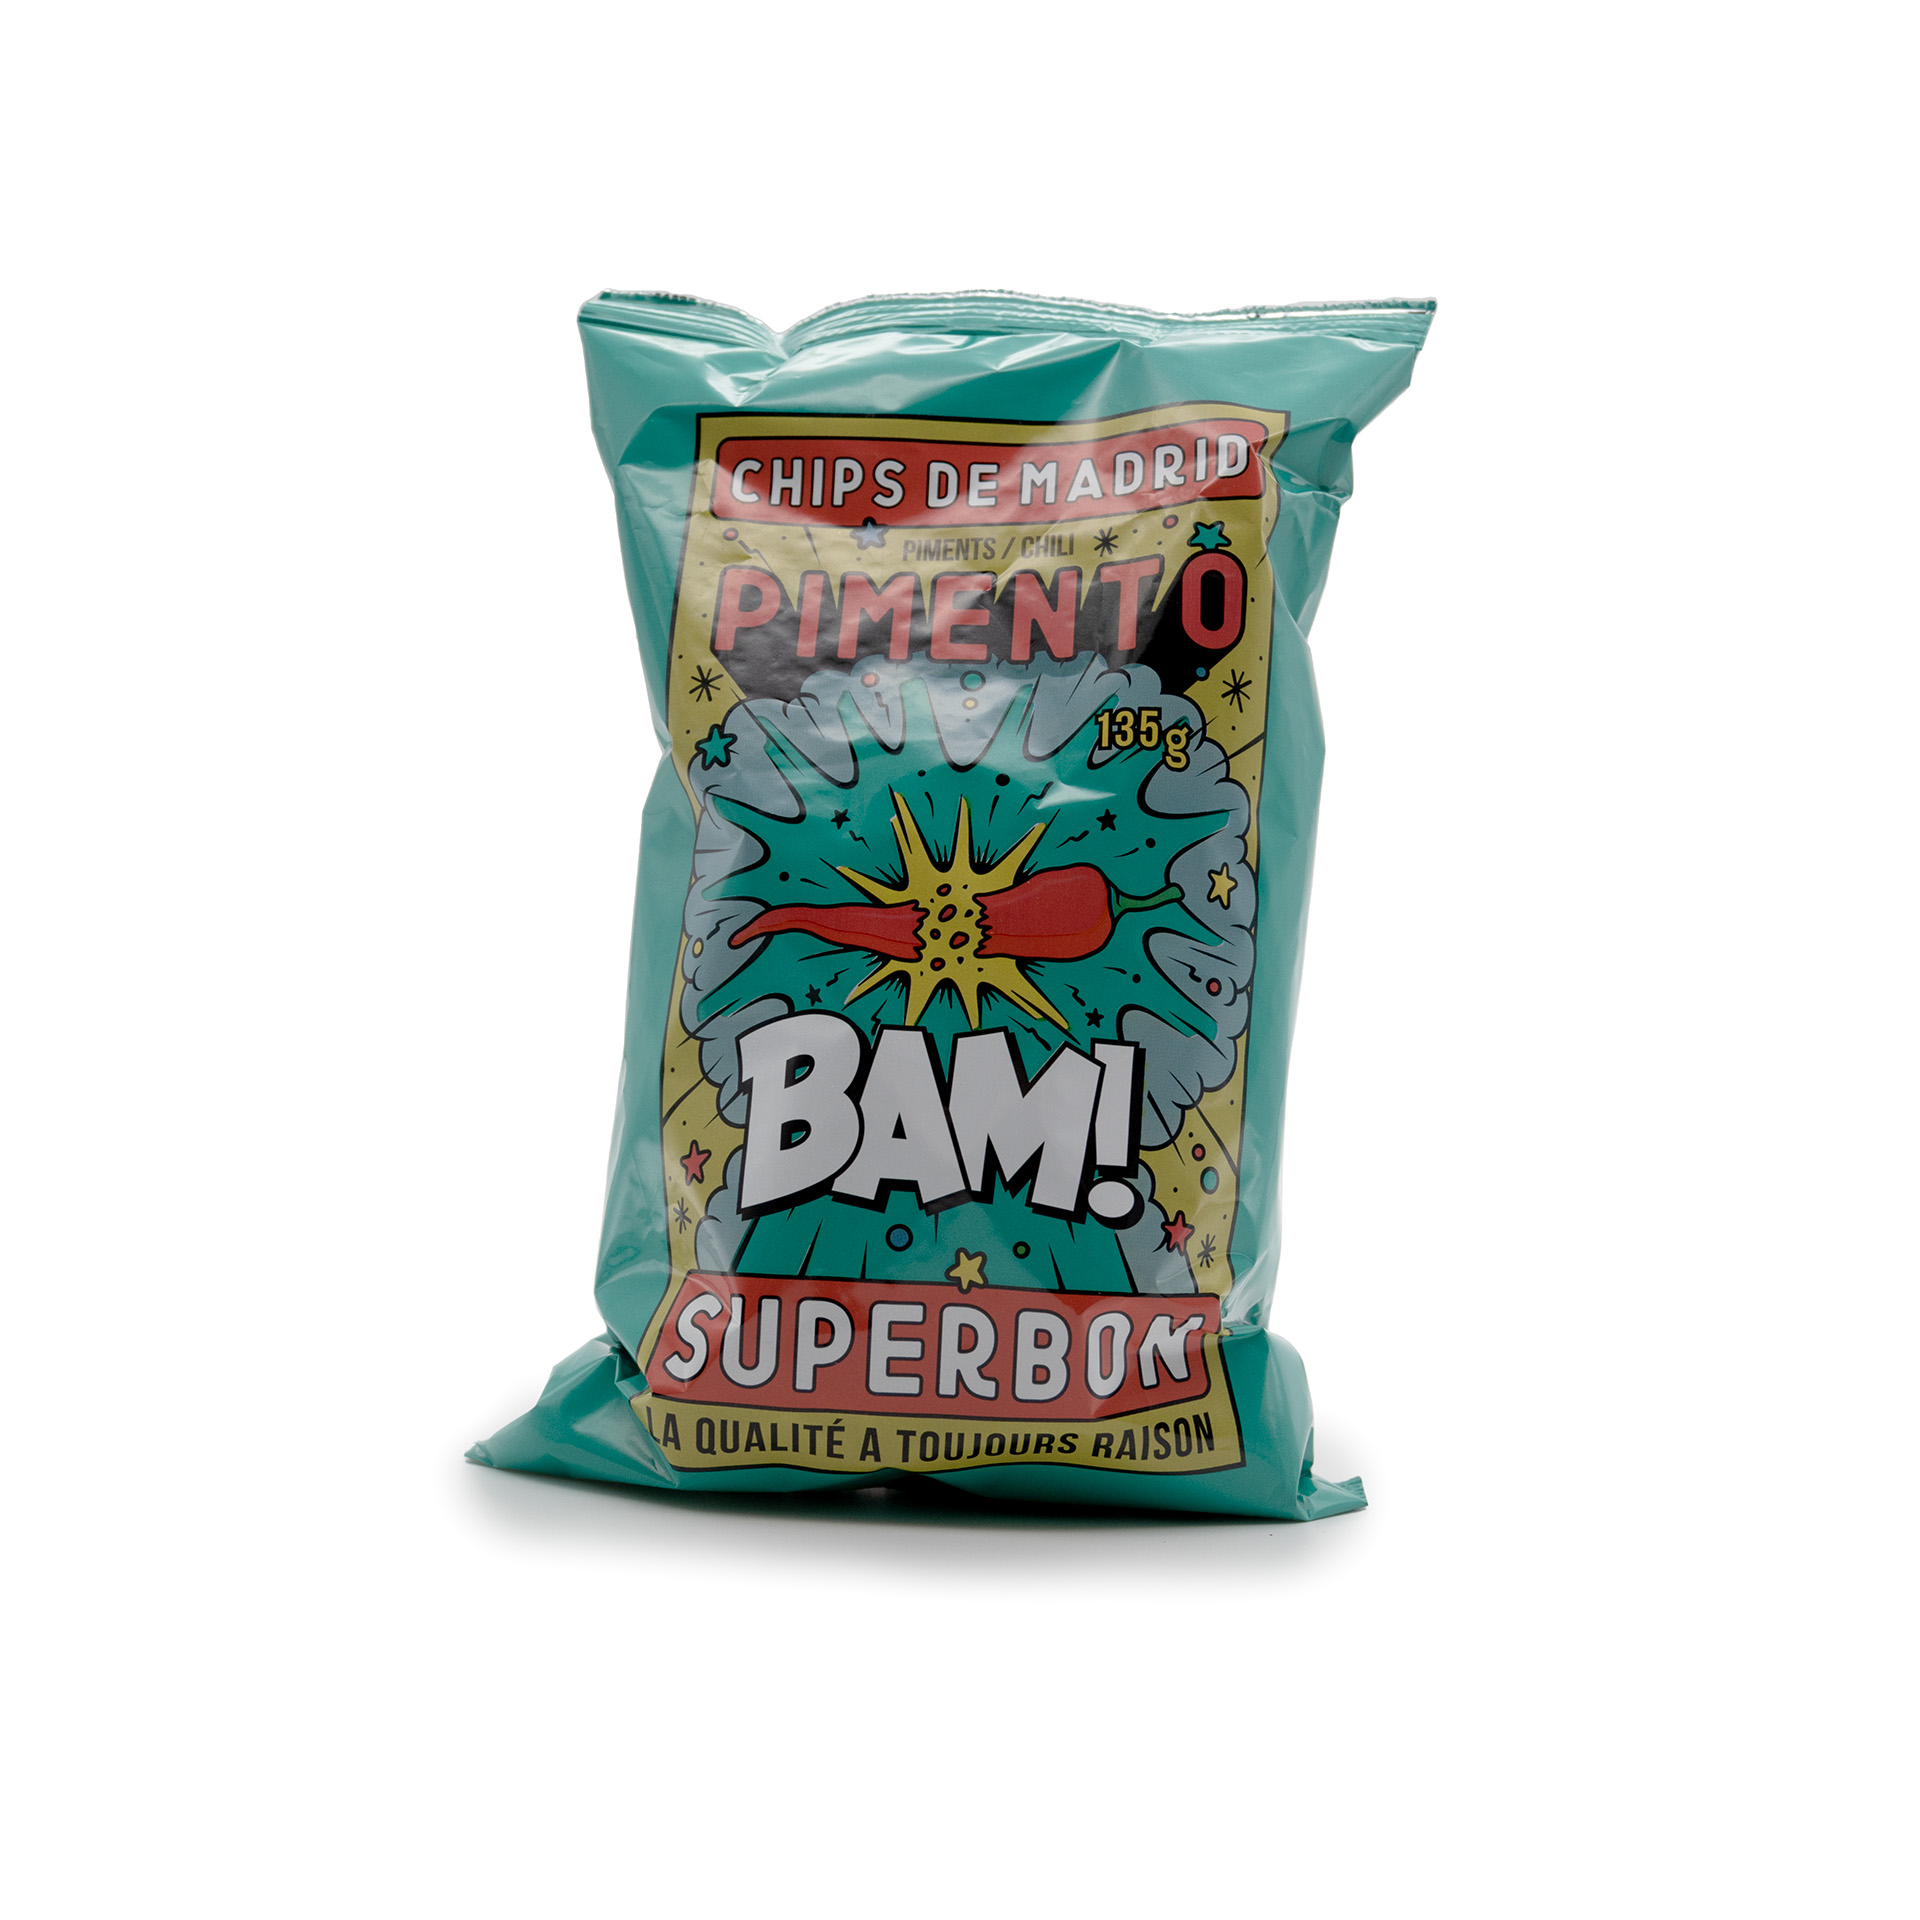 Superbon - Bam Chips Pimento groß